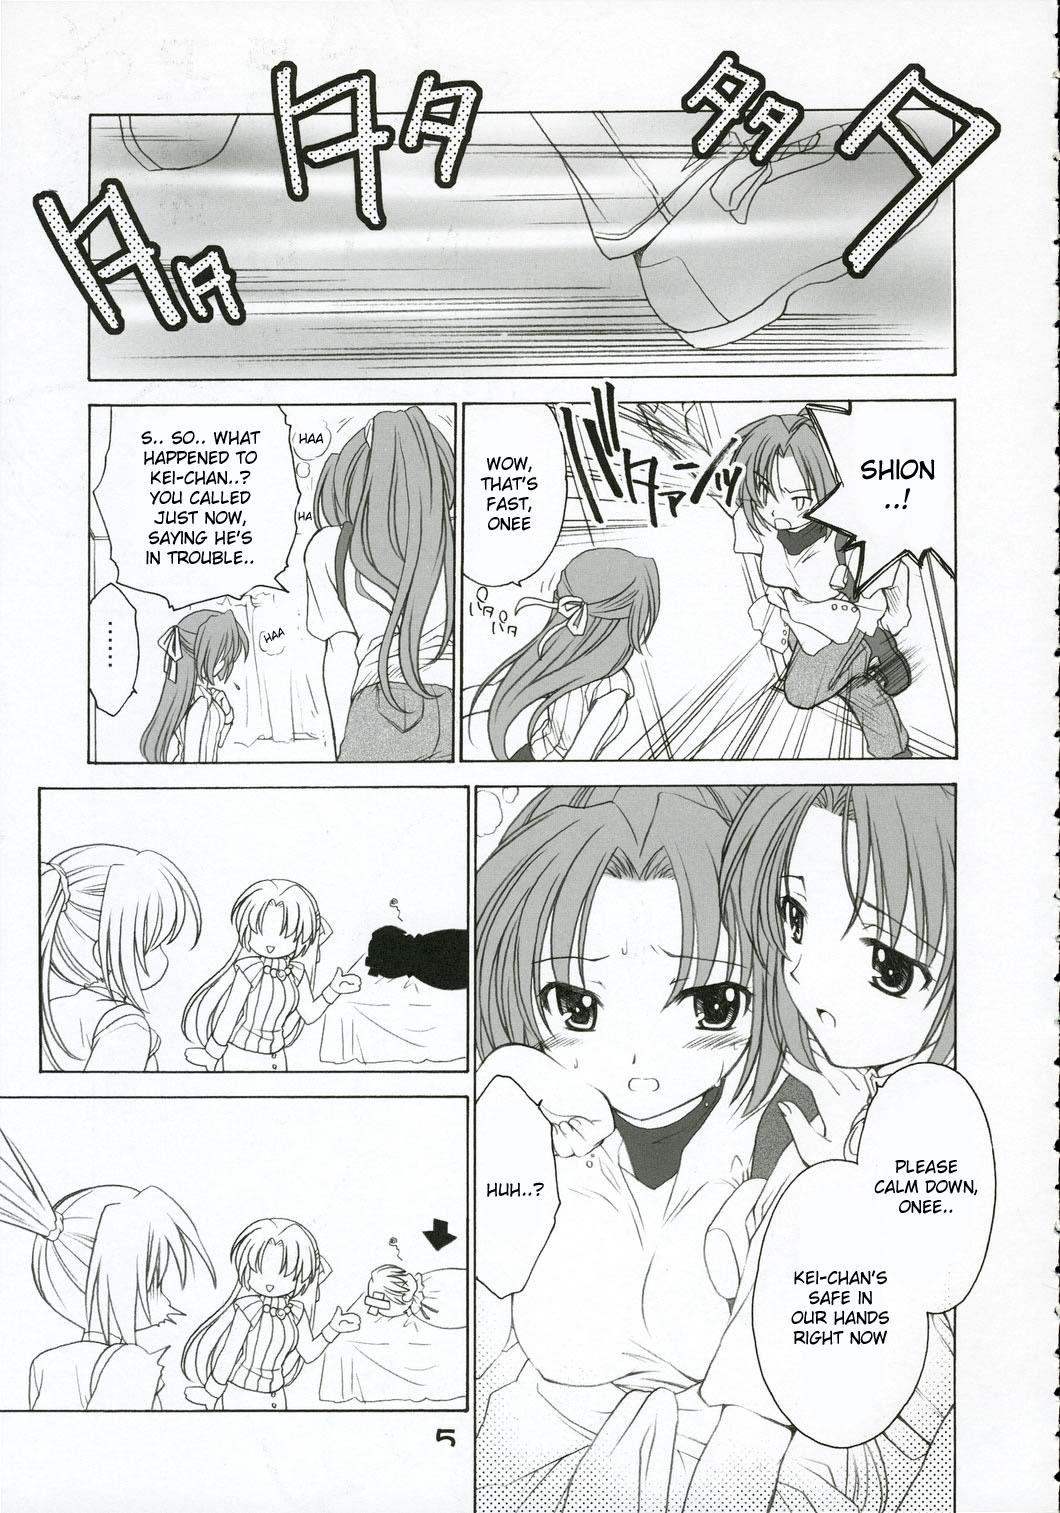 Mallu Mion Shion - Higurashi no naku koro ni Couples - Page 4